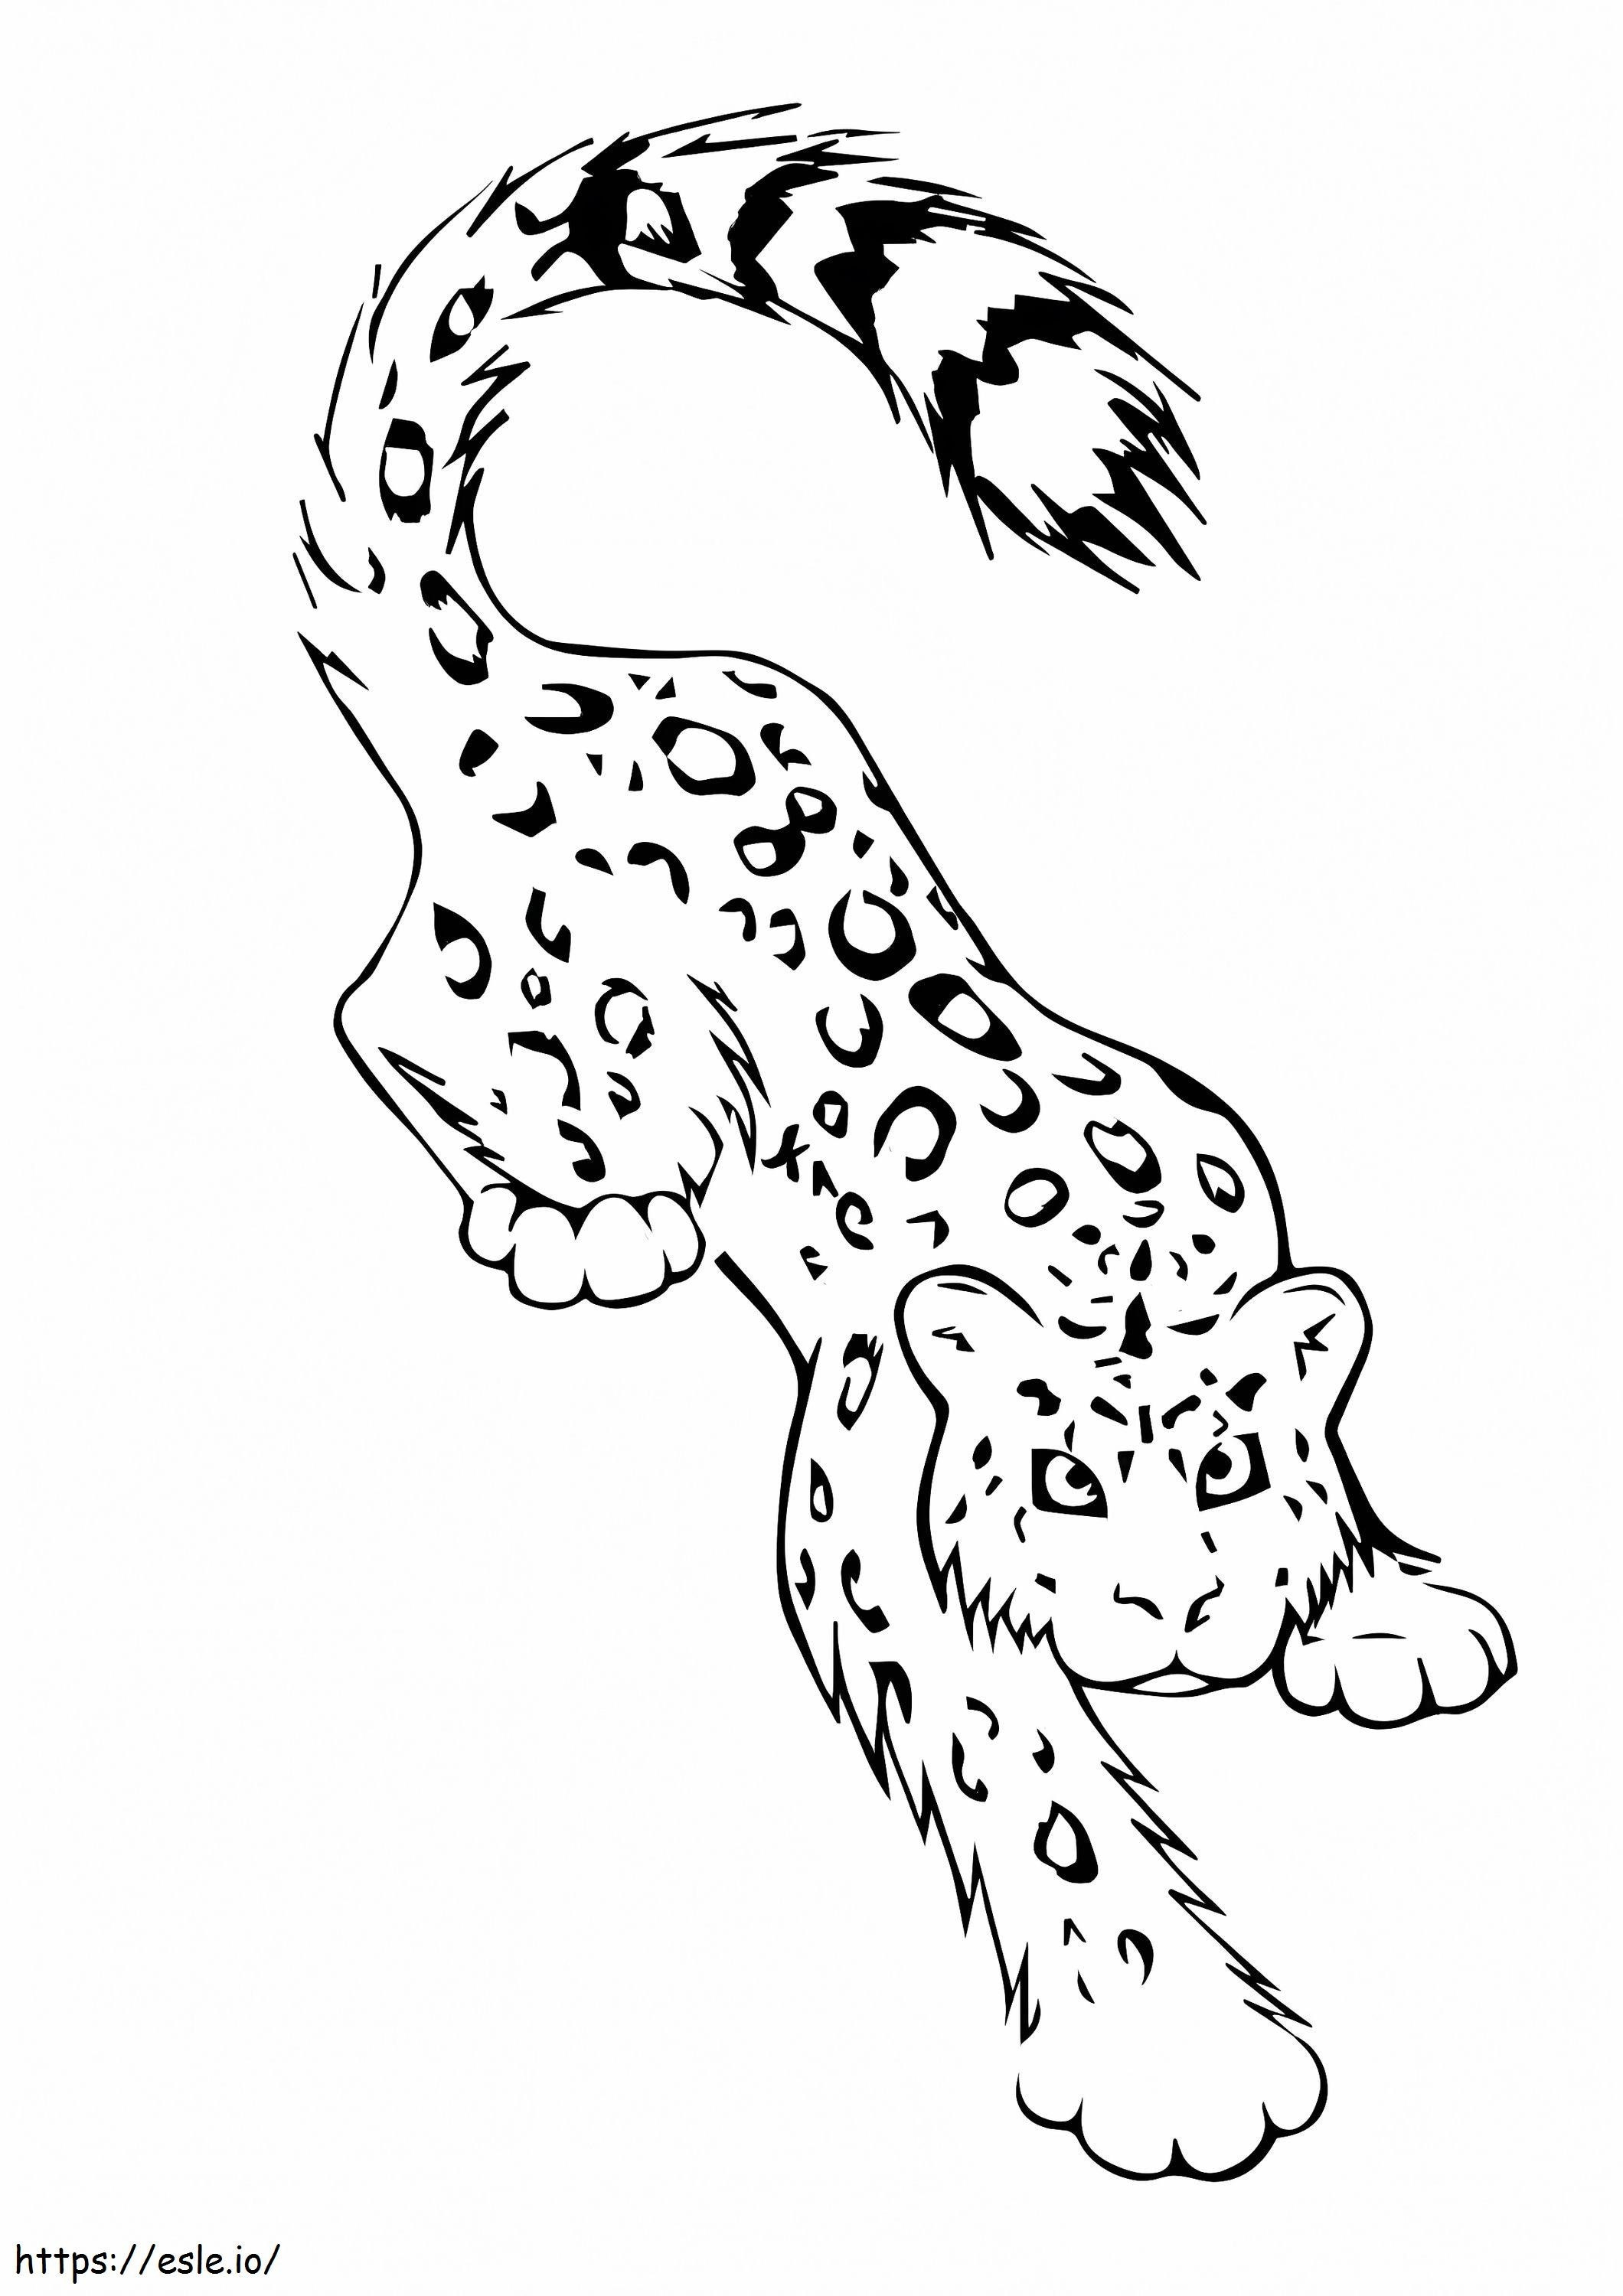 Leopardo delle nevi 1 da colorare